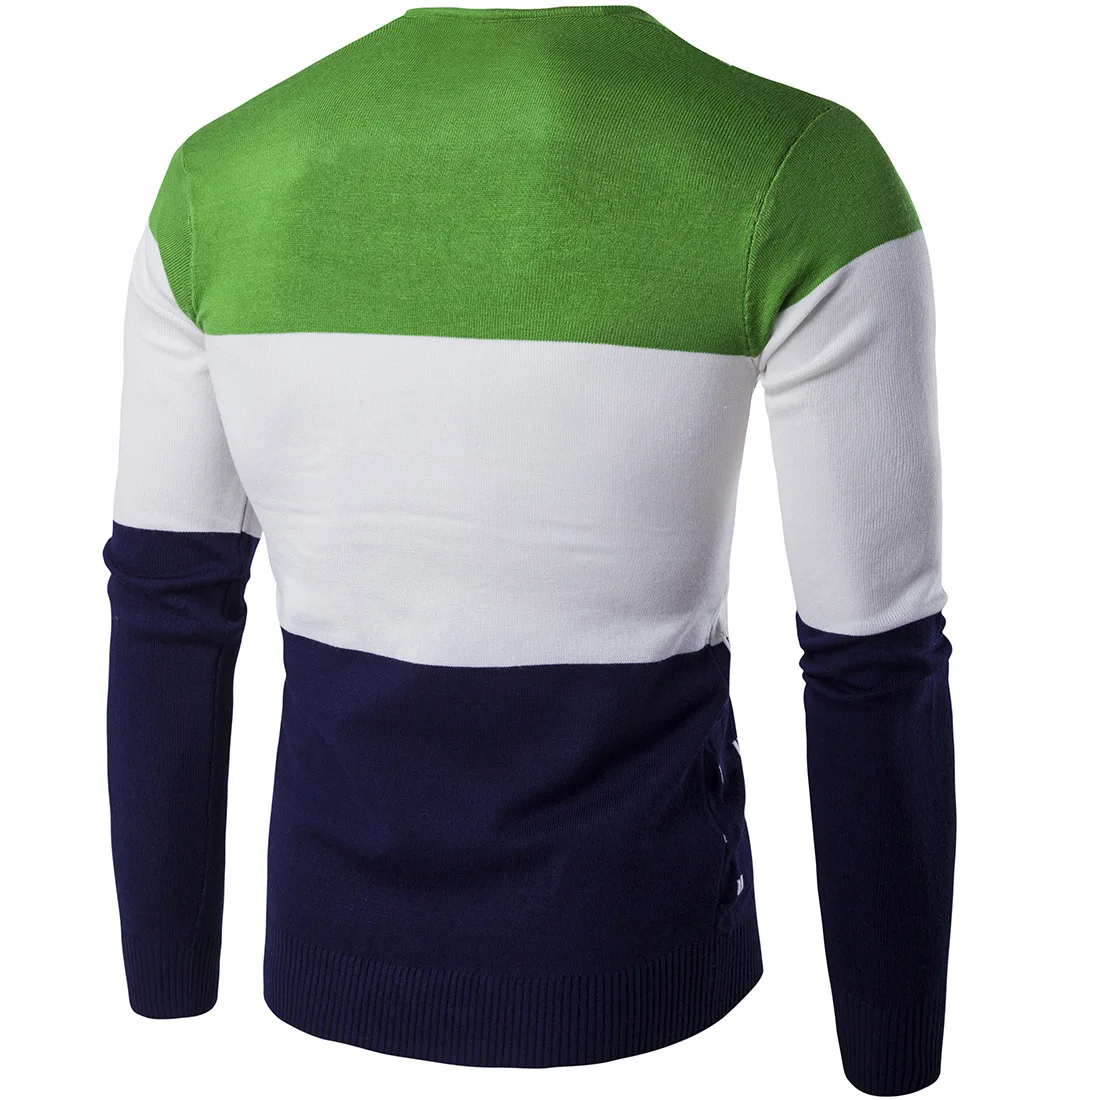 2018 5 цветов полосатый свитер мужской теплый длинный рукав v-образный вырез зимняя одежда для мужской моды Slim Fit принт пуловер свитер